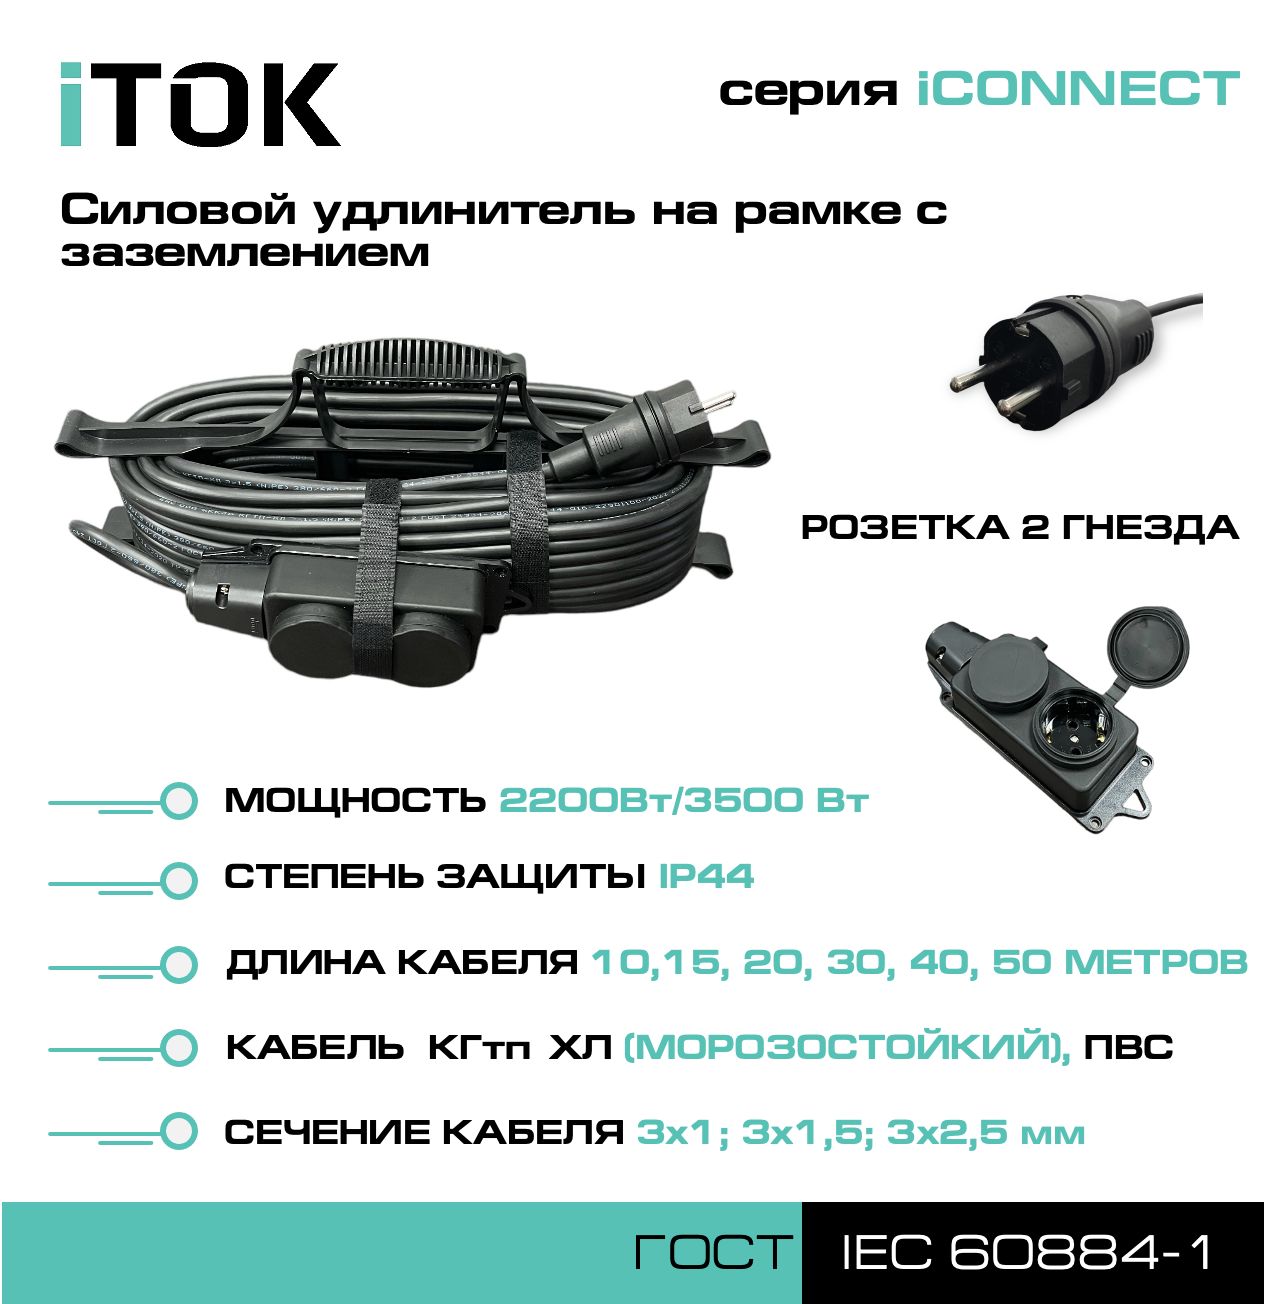 Удлинитель на рамке с заземлением серии iTOK iCONNECT ПВС 3х2,5 мм 2 гнезда IP44 10 м метчики для ремонта резьбы гнезда датчика кислорода ae